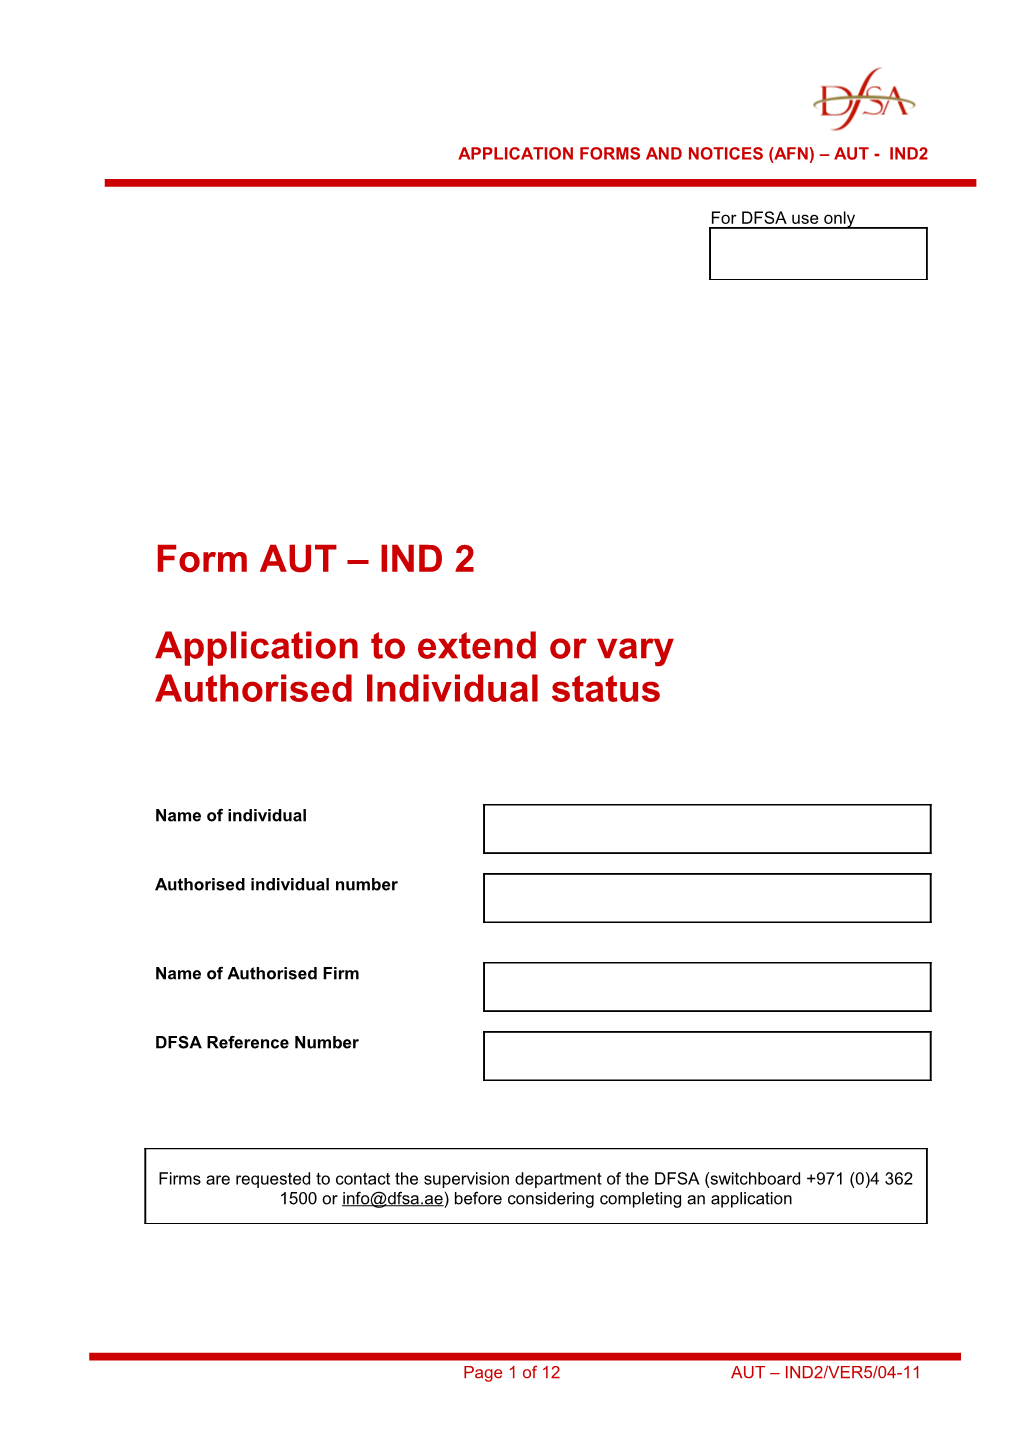 Form AUT IND 2